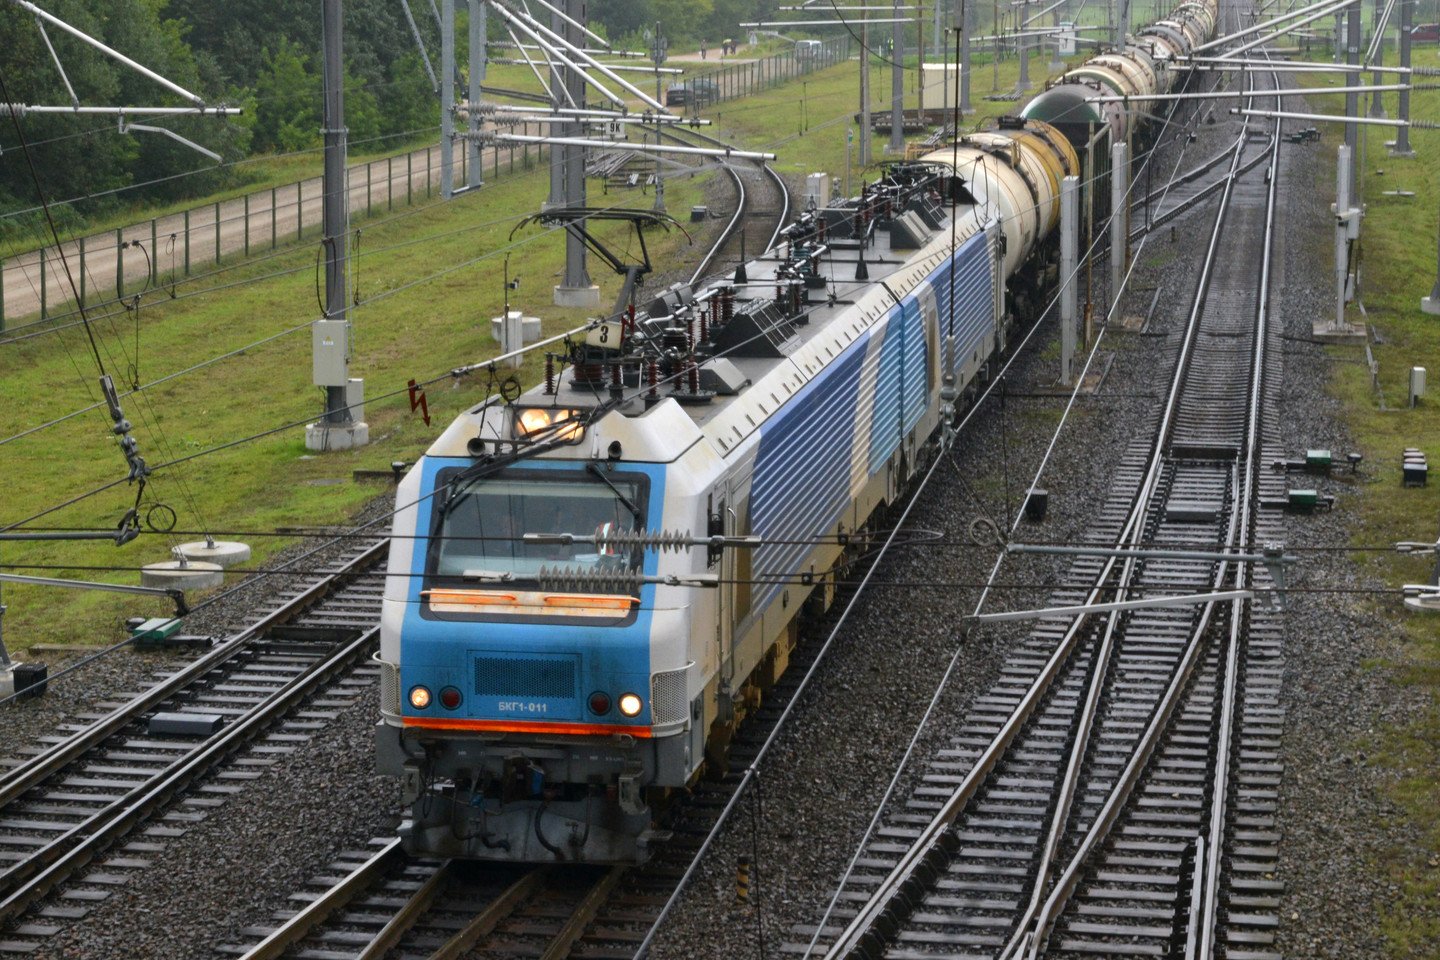  Rugsėjo 6 d. Kenos geležinkelio stotį pasiekė bandomasis elektrovežis iš Baltarusijos.<br> Bendrovės nuotr.